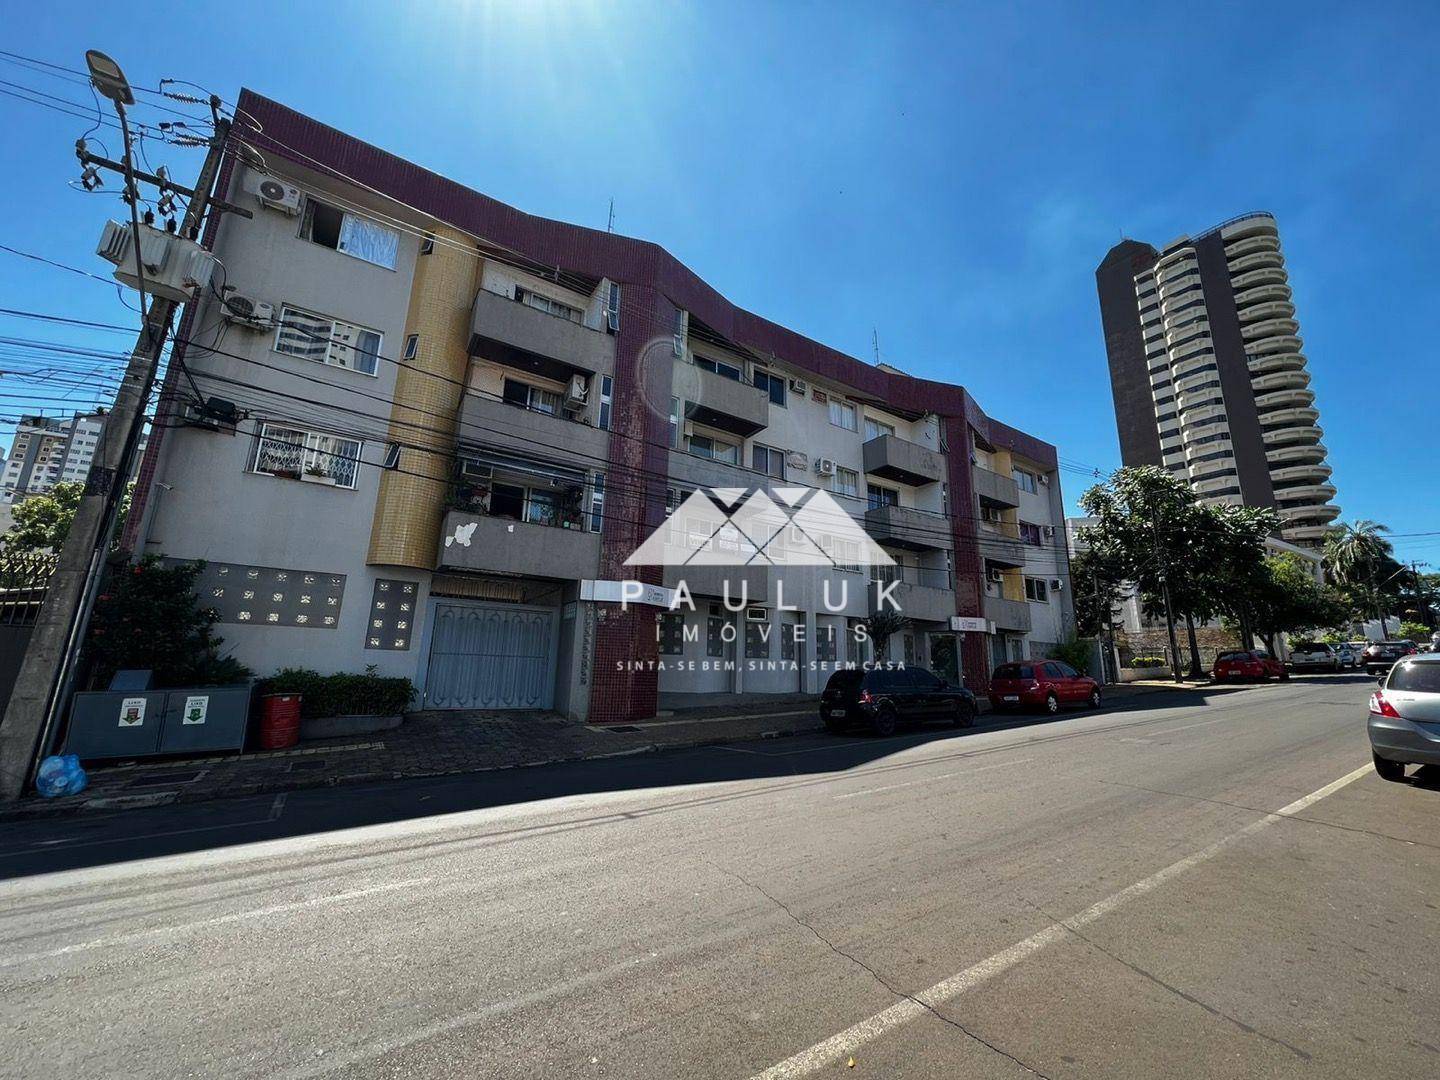 Apartamento com 2 Dormitórios à venda Por R$ 340.000,00 - Edifício Veneza - Foz do Iguaçu/pr | PAULUK IMÓVEIS | Portal OBusca